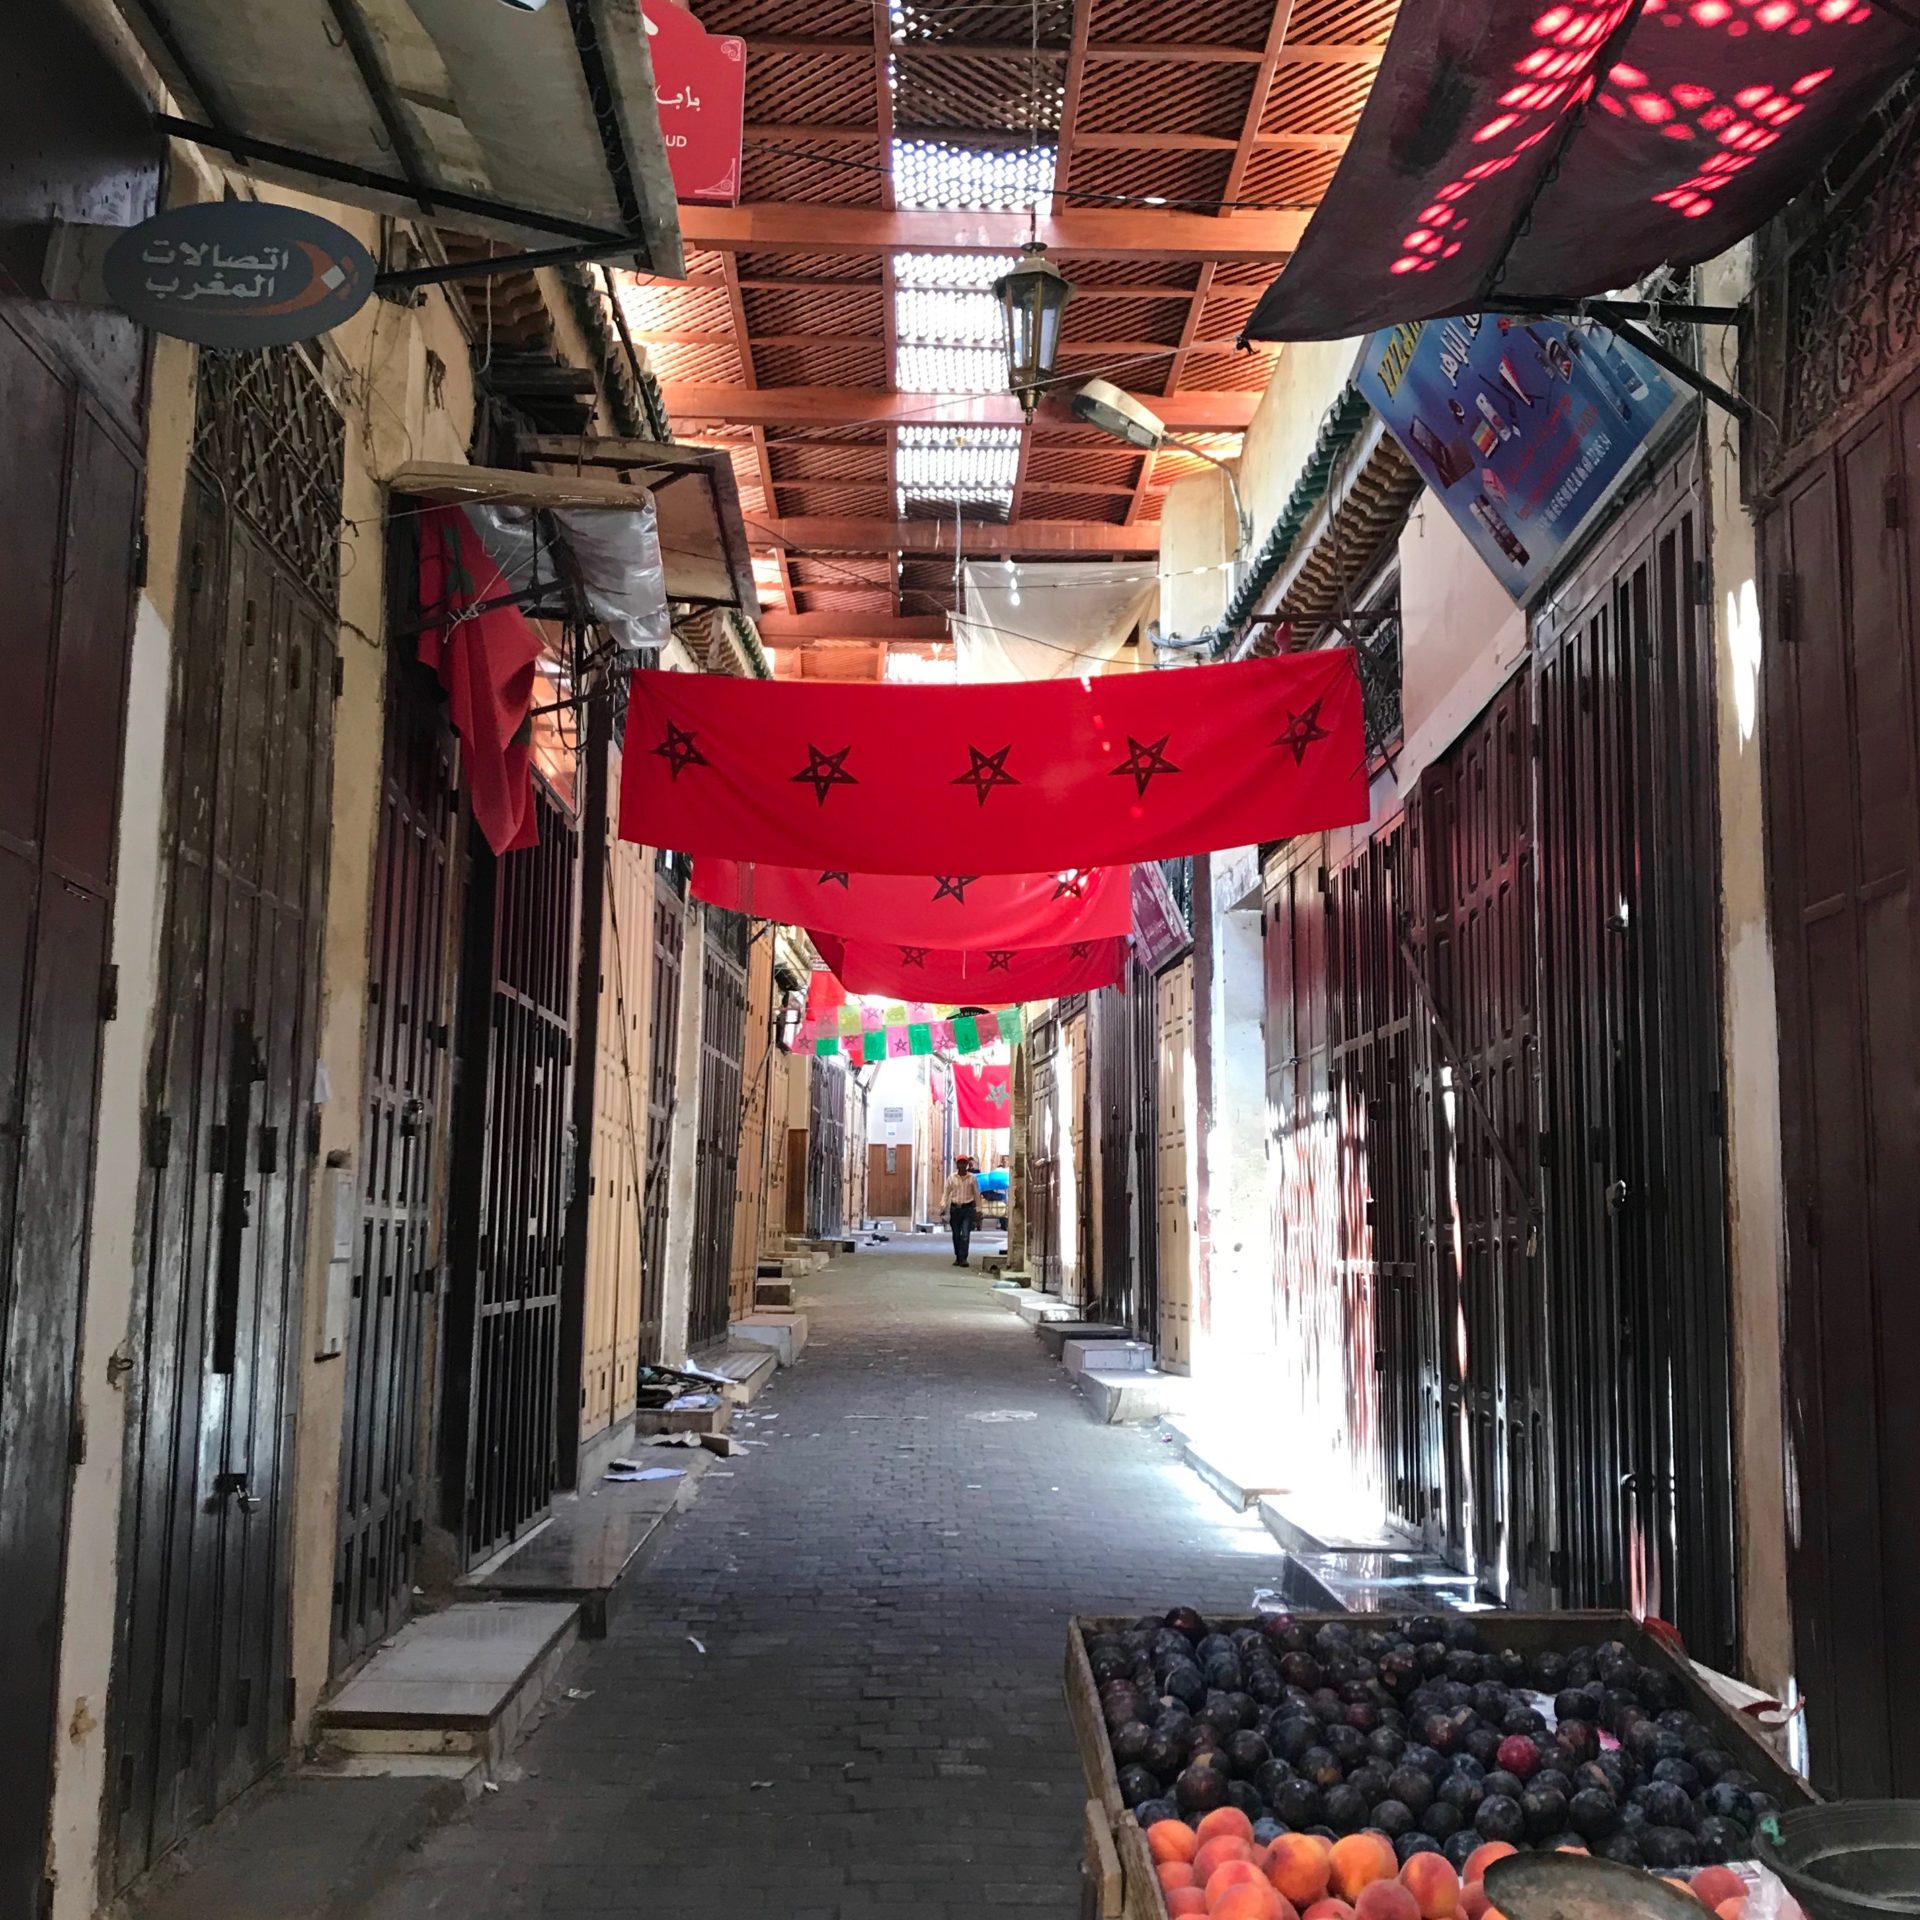 Fez market street